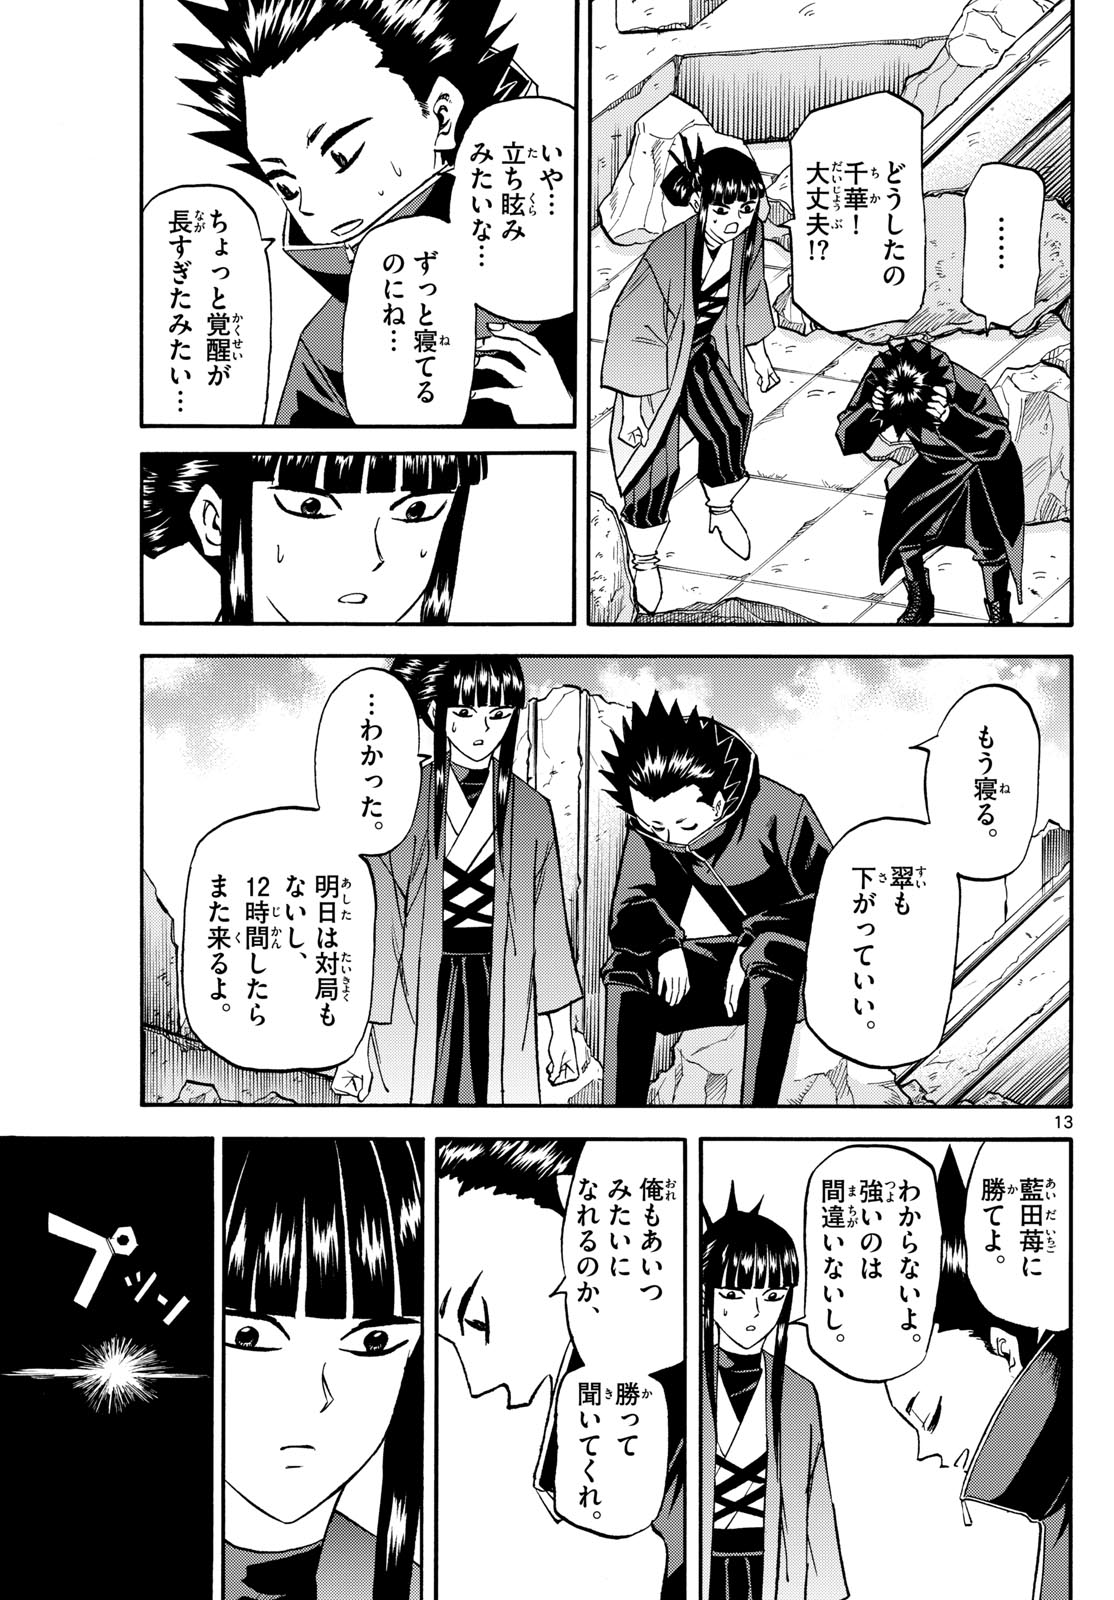 Tatsu to Ichigo - Chapter 192 - Page 13